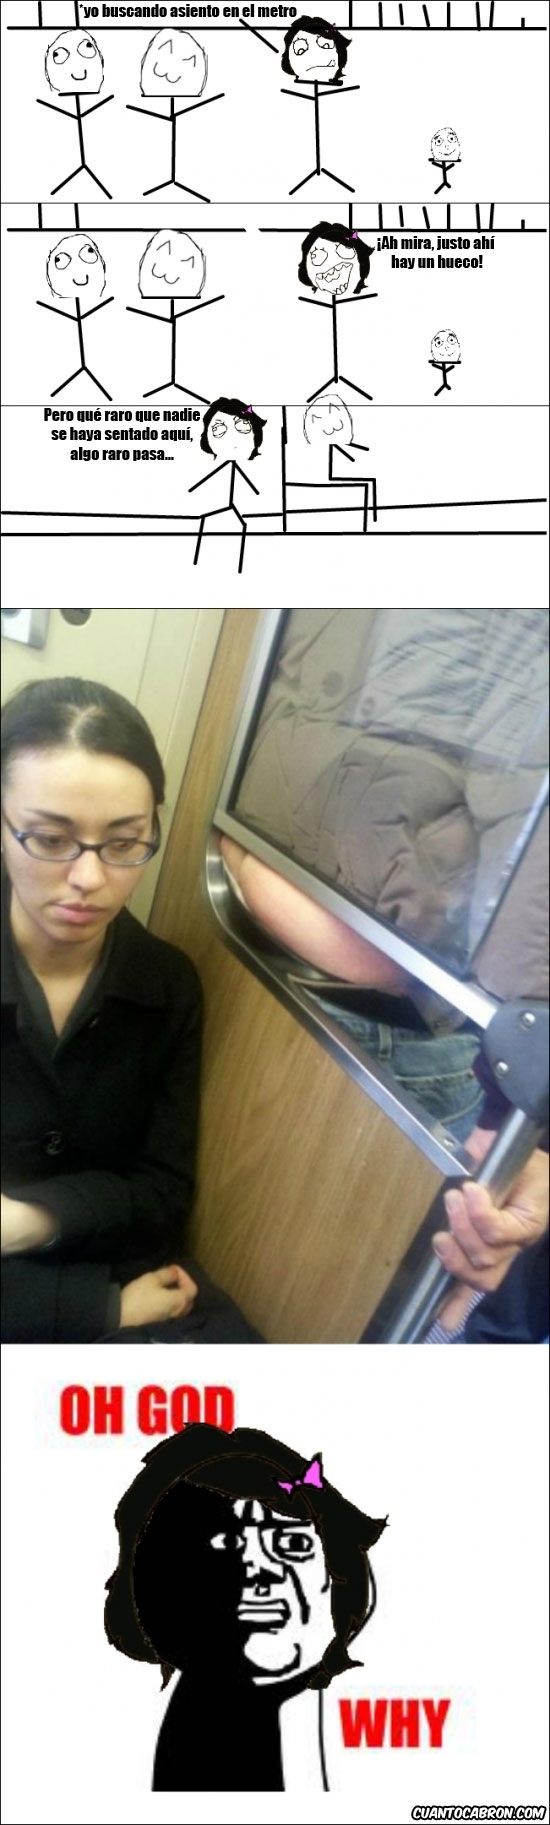 Oh_god_why - Cuando veas el metro lleno y un asiento vacío, desconfía